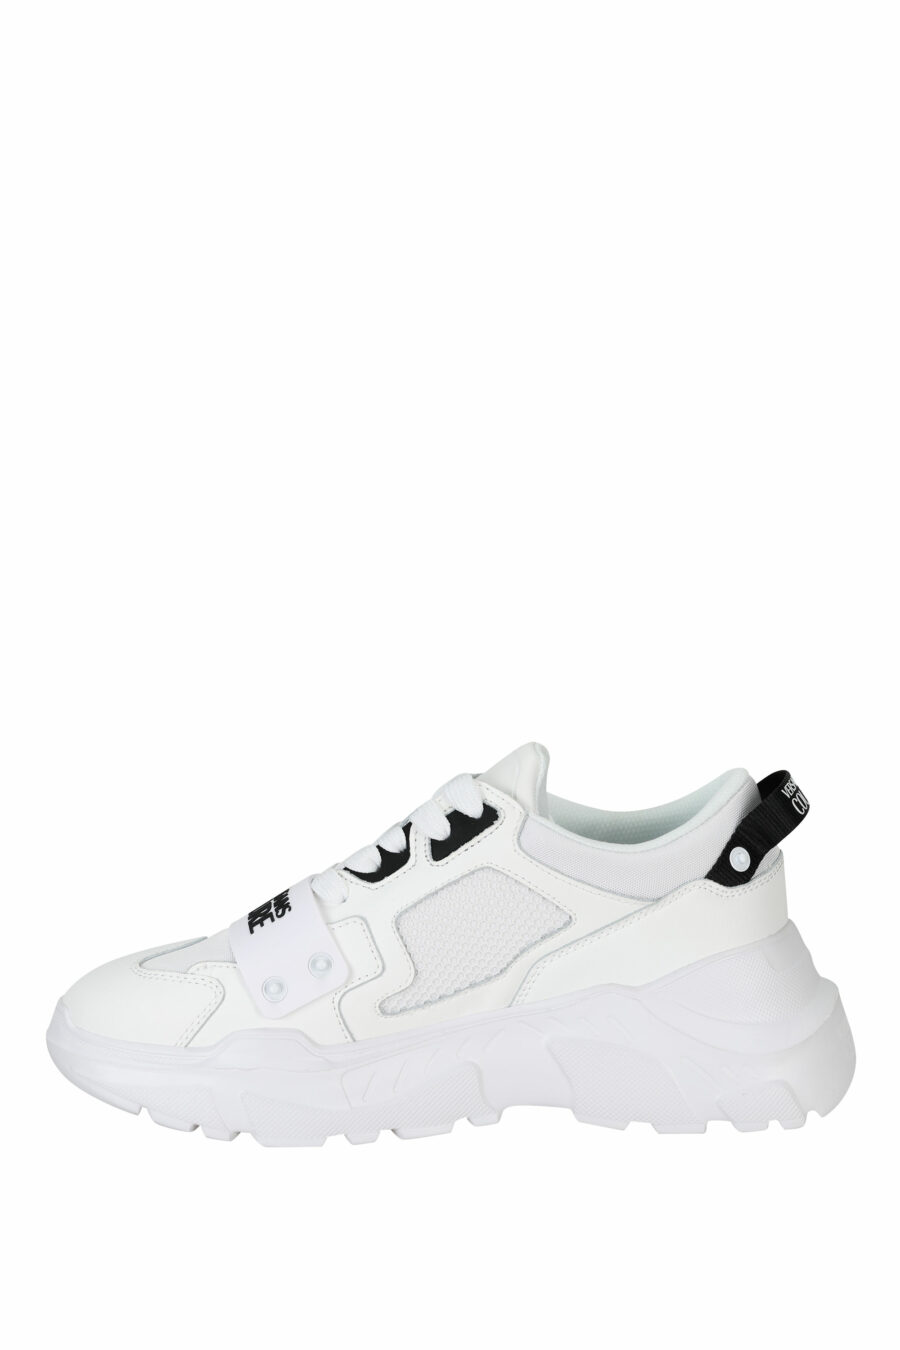 Zapatillas blancas "speedtrack" con minilogo frontal negro en goma - 8052019604337 2